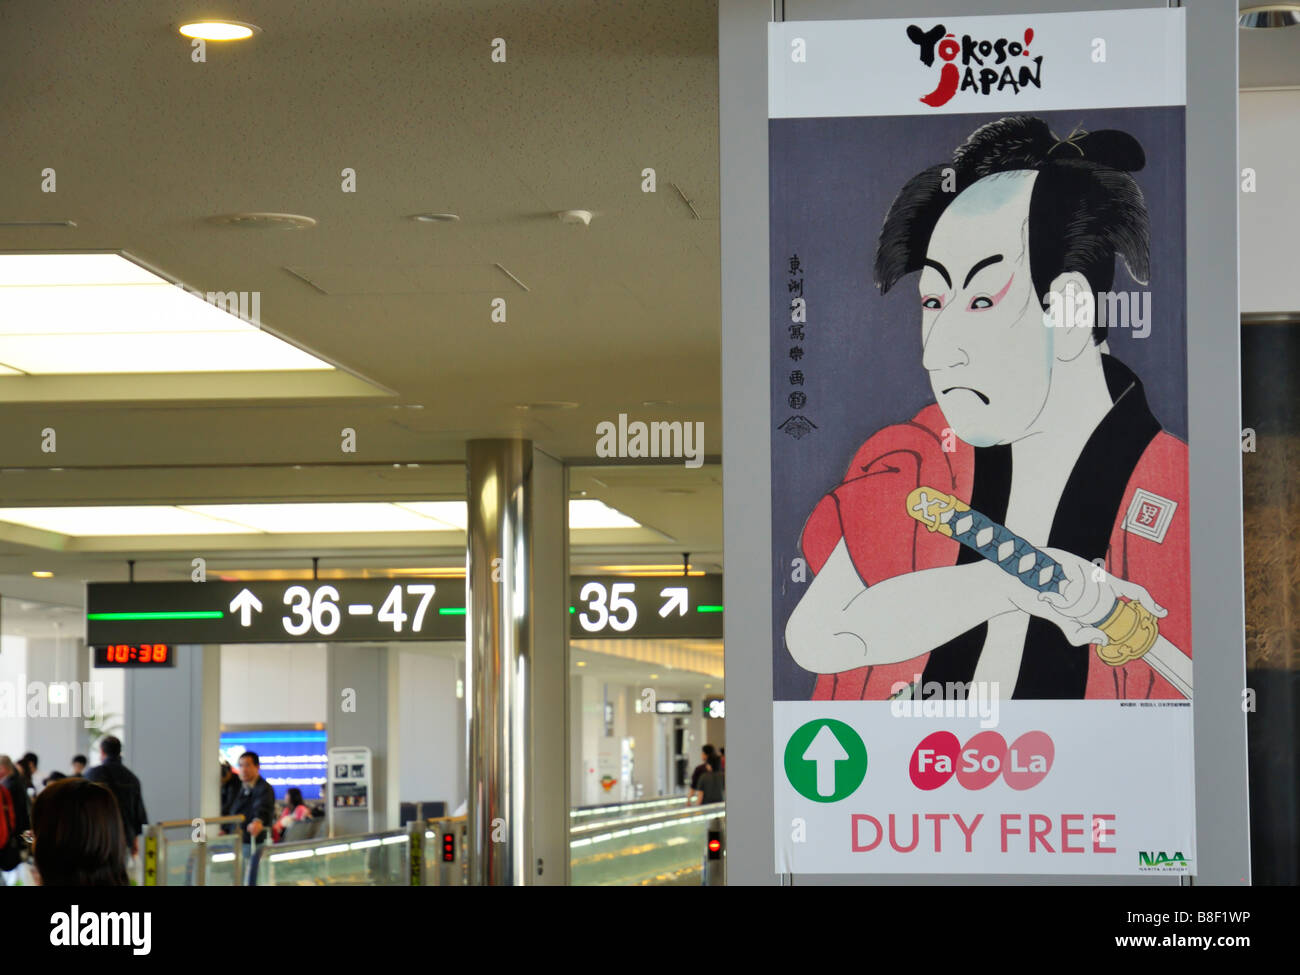 Yokoso Japan au Duty Free Shop, aéroport de Tokyo Narita (NRT/RJAA), Chiba JP Banque D'Images